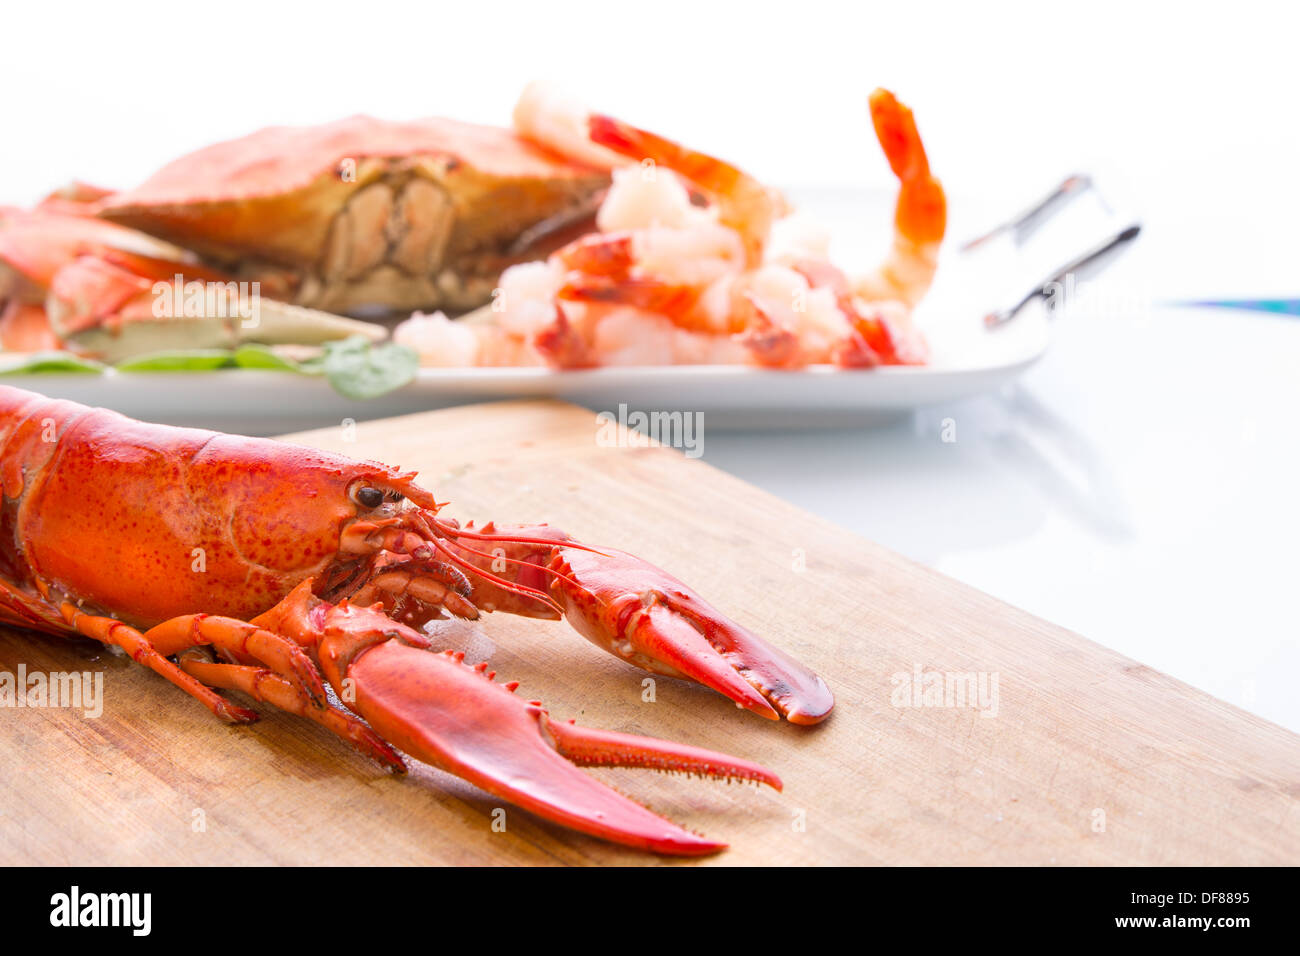 La preparazione di dungeness crab, red lobster e gamberetti in cucina sul bordo di taglio Foto Stock